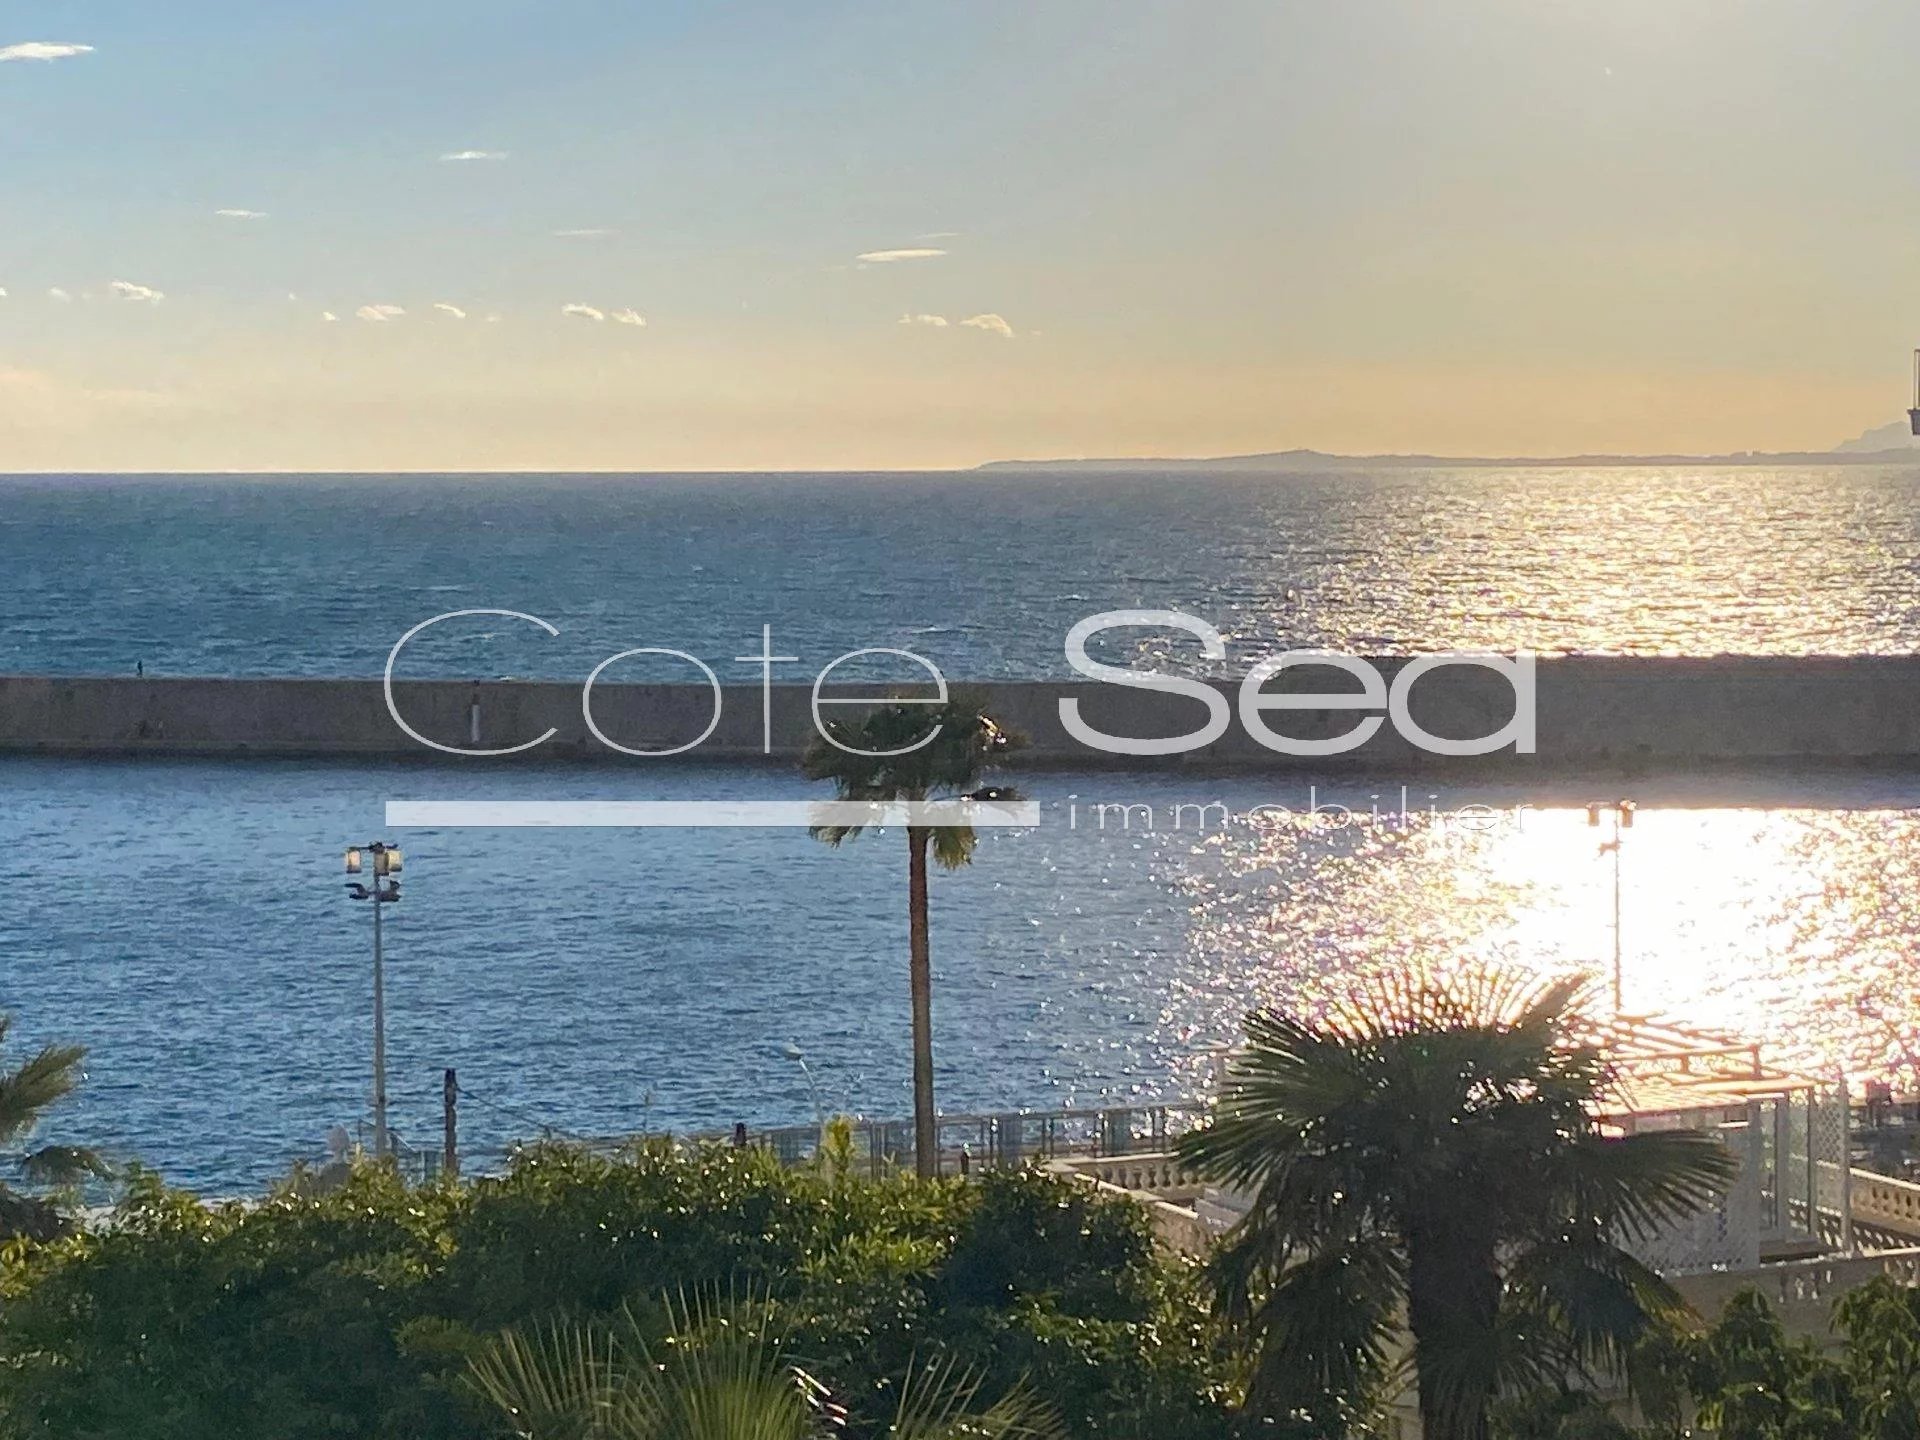 Vente Appartement 85m² 3 Pièces à Nice (06000) - Cote Sea Immobilier